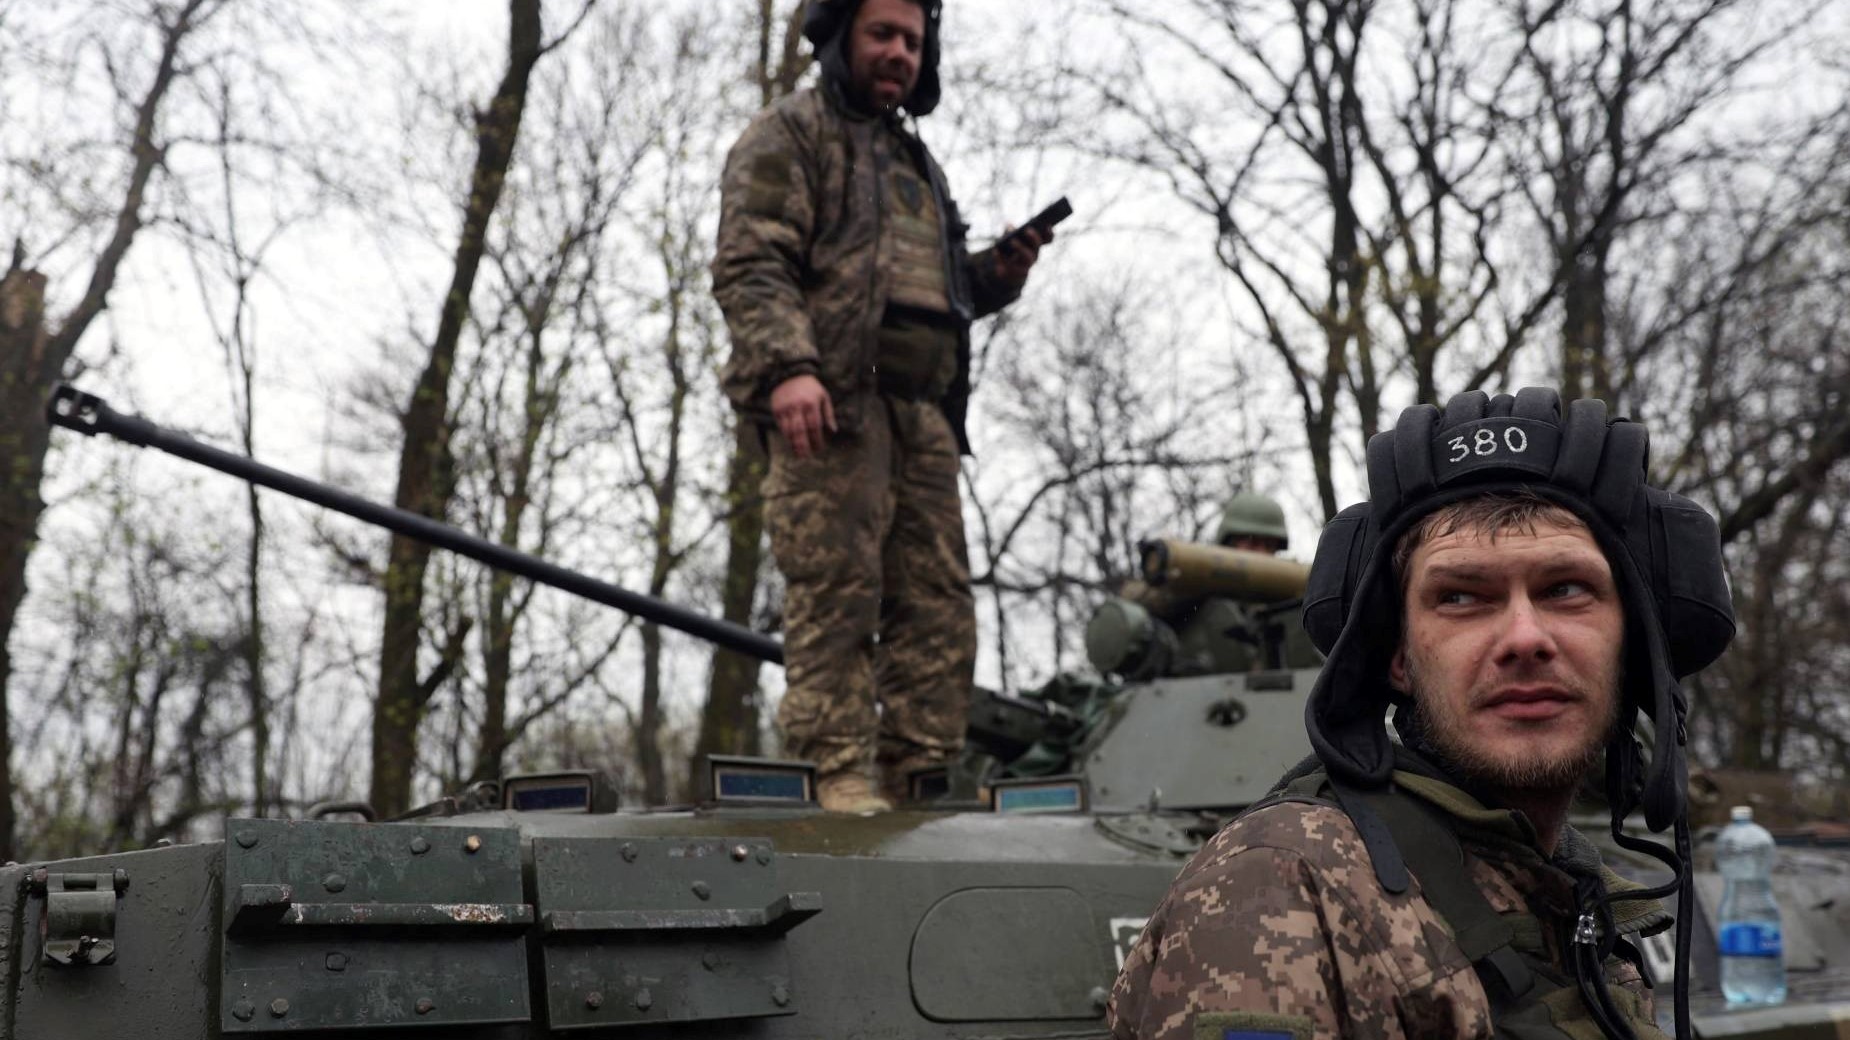 جنود أوكرانيون يقفون بجانب حاملة جندهم المدرعة ، ليس بعيدًا عن خط المواجهة مع القوات الروسية، في منطقة إيزيوم، خاركيف